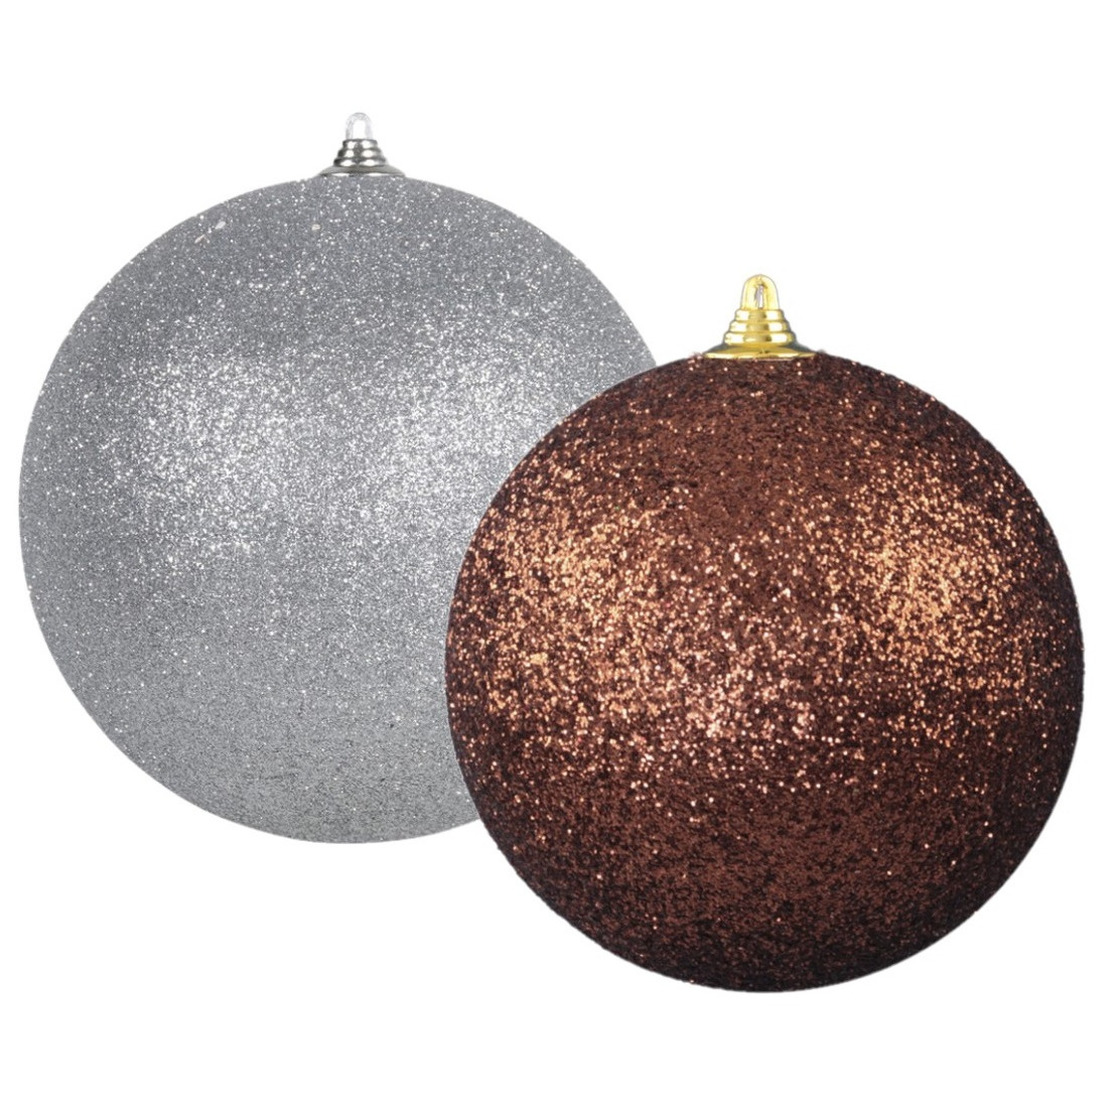 Kerstversieringen set van 2x extra grote kunststof kerstballen bruin en zilver 25 cm glitter -